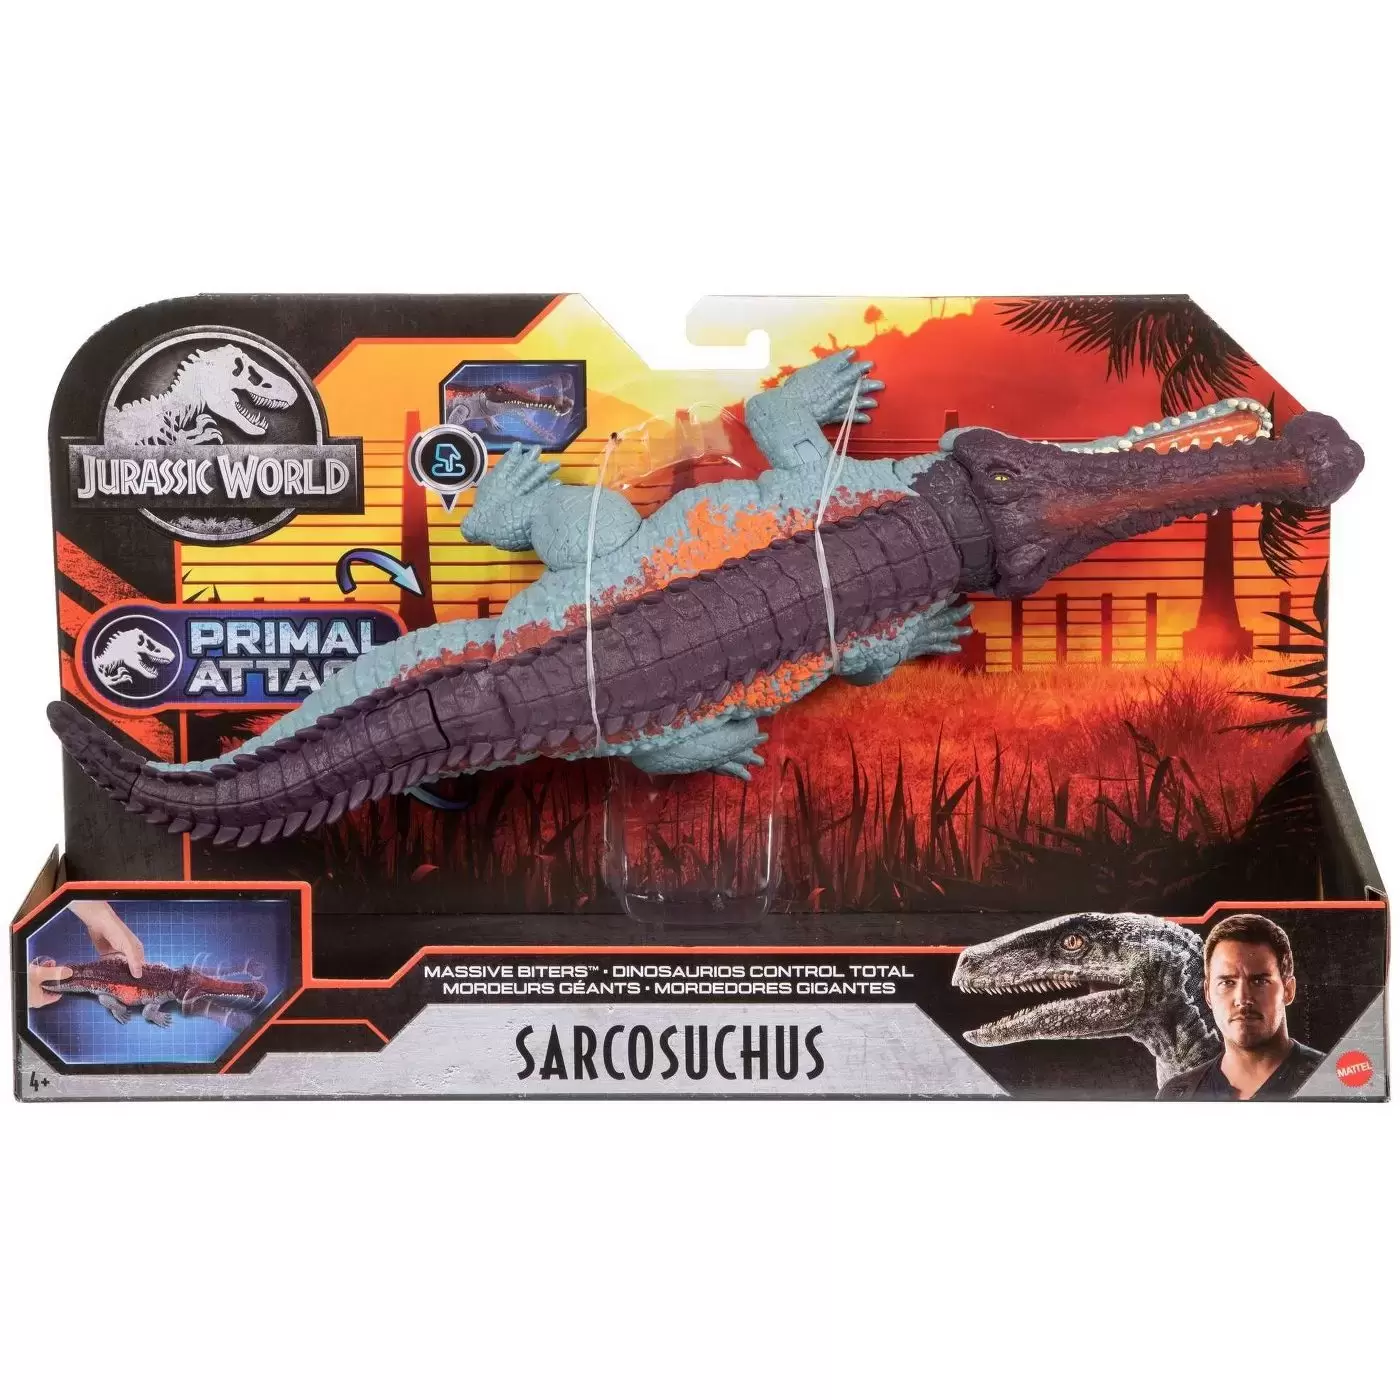 Jurassic World : Primal Attack - Sarcosuchus